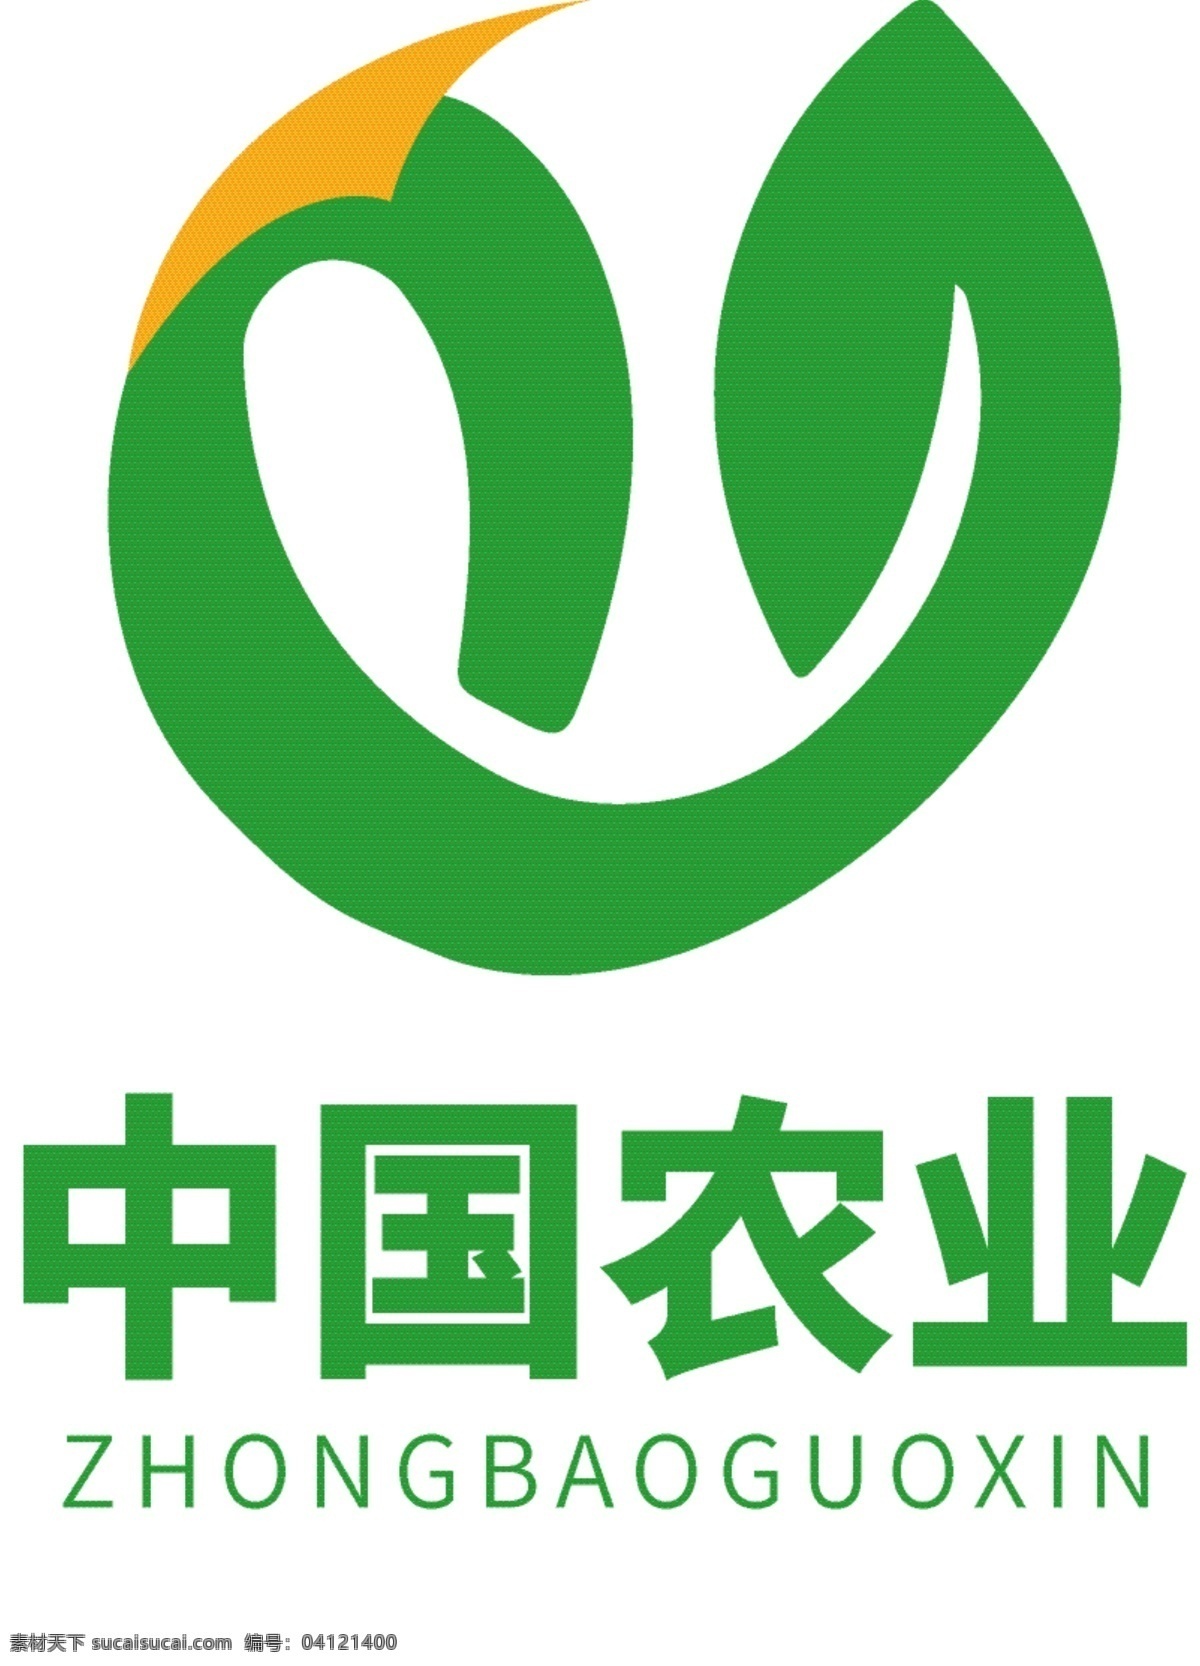 中国 农业 种植业 logo 农业logo 企业logo 种子logo 树叶logo 绿色logo